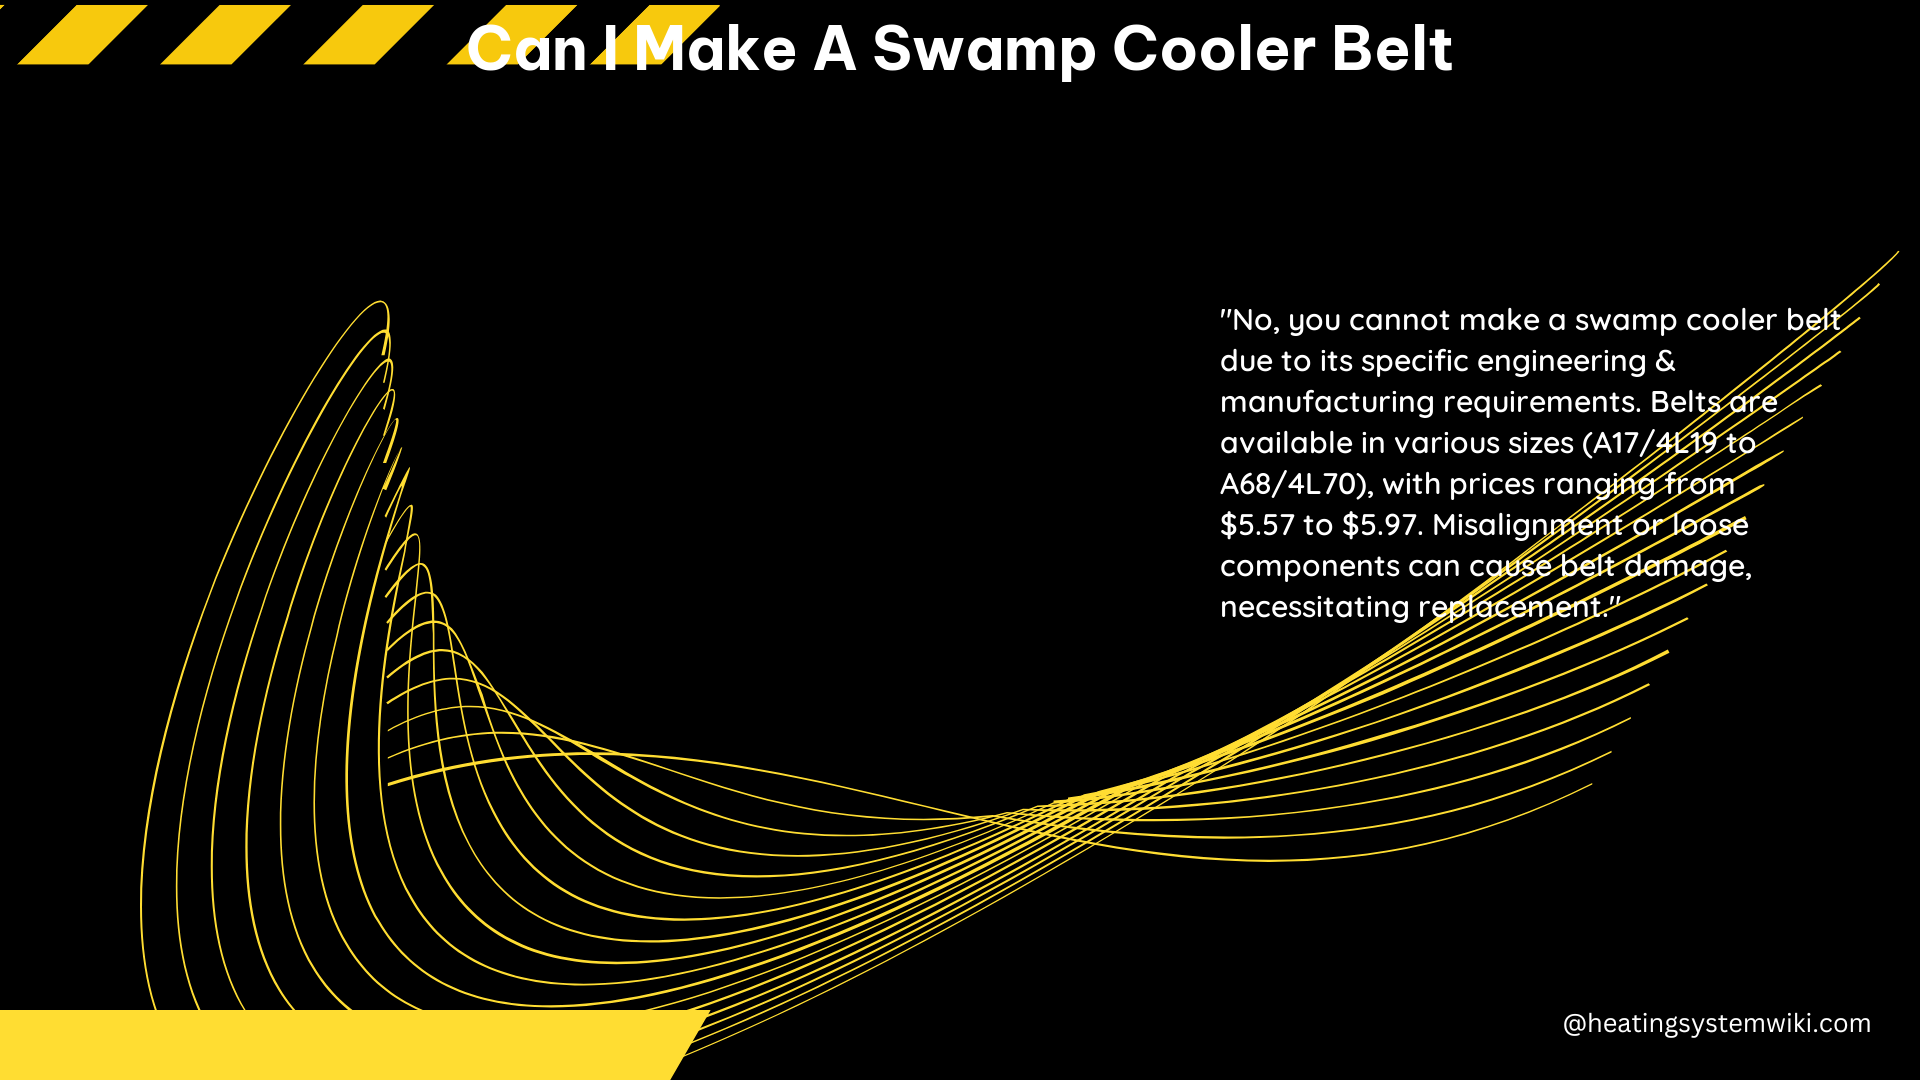 Can I Make a Swamp Cooler Belt